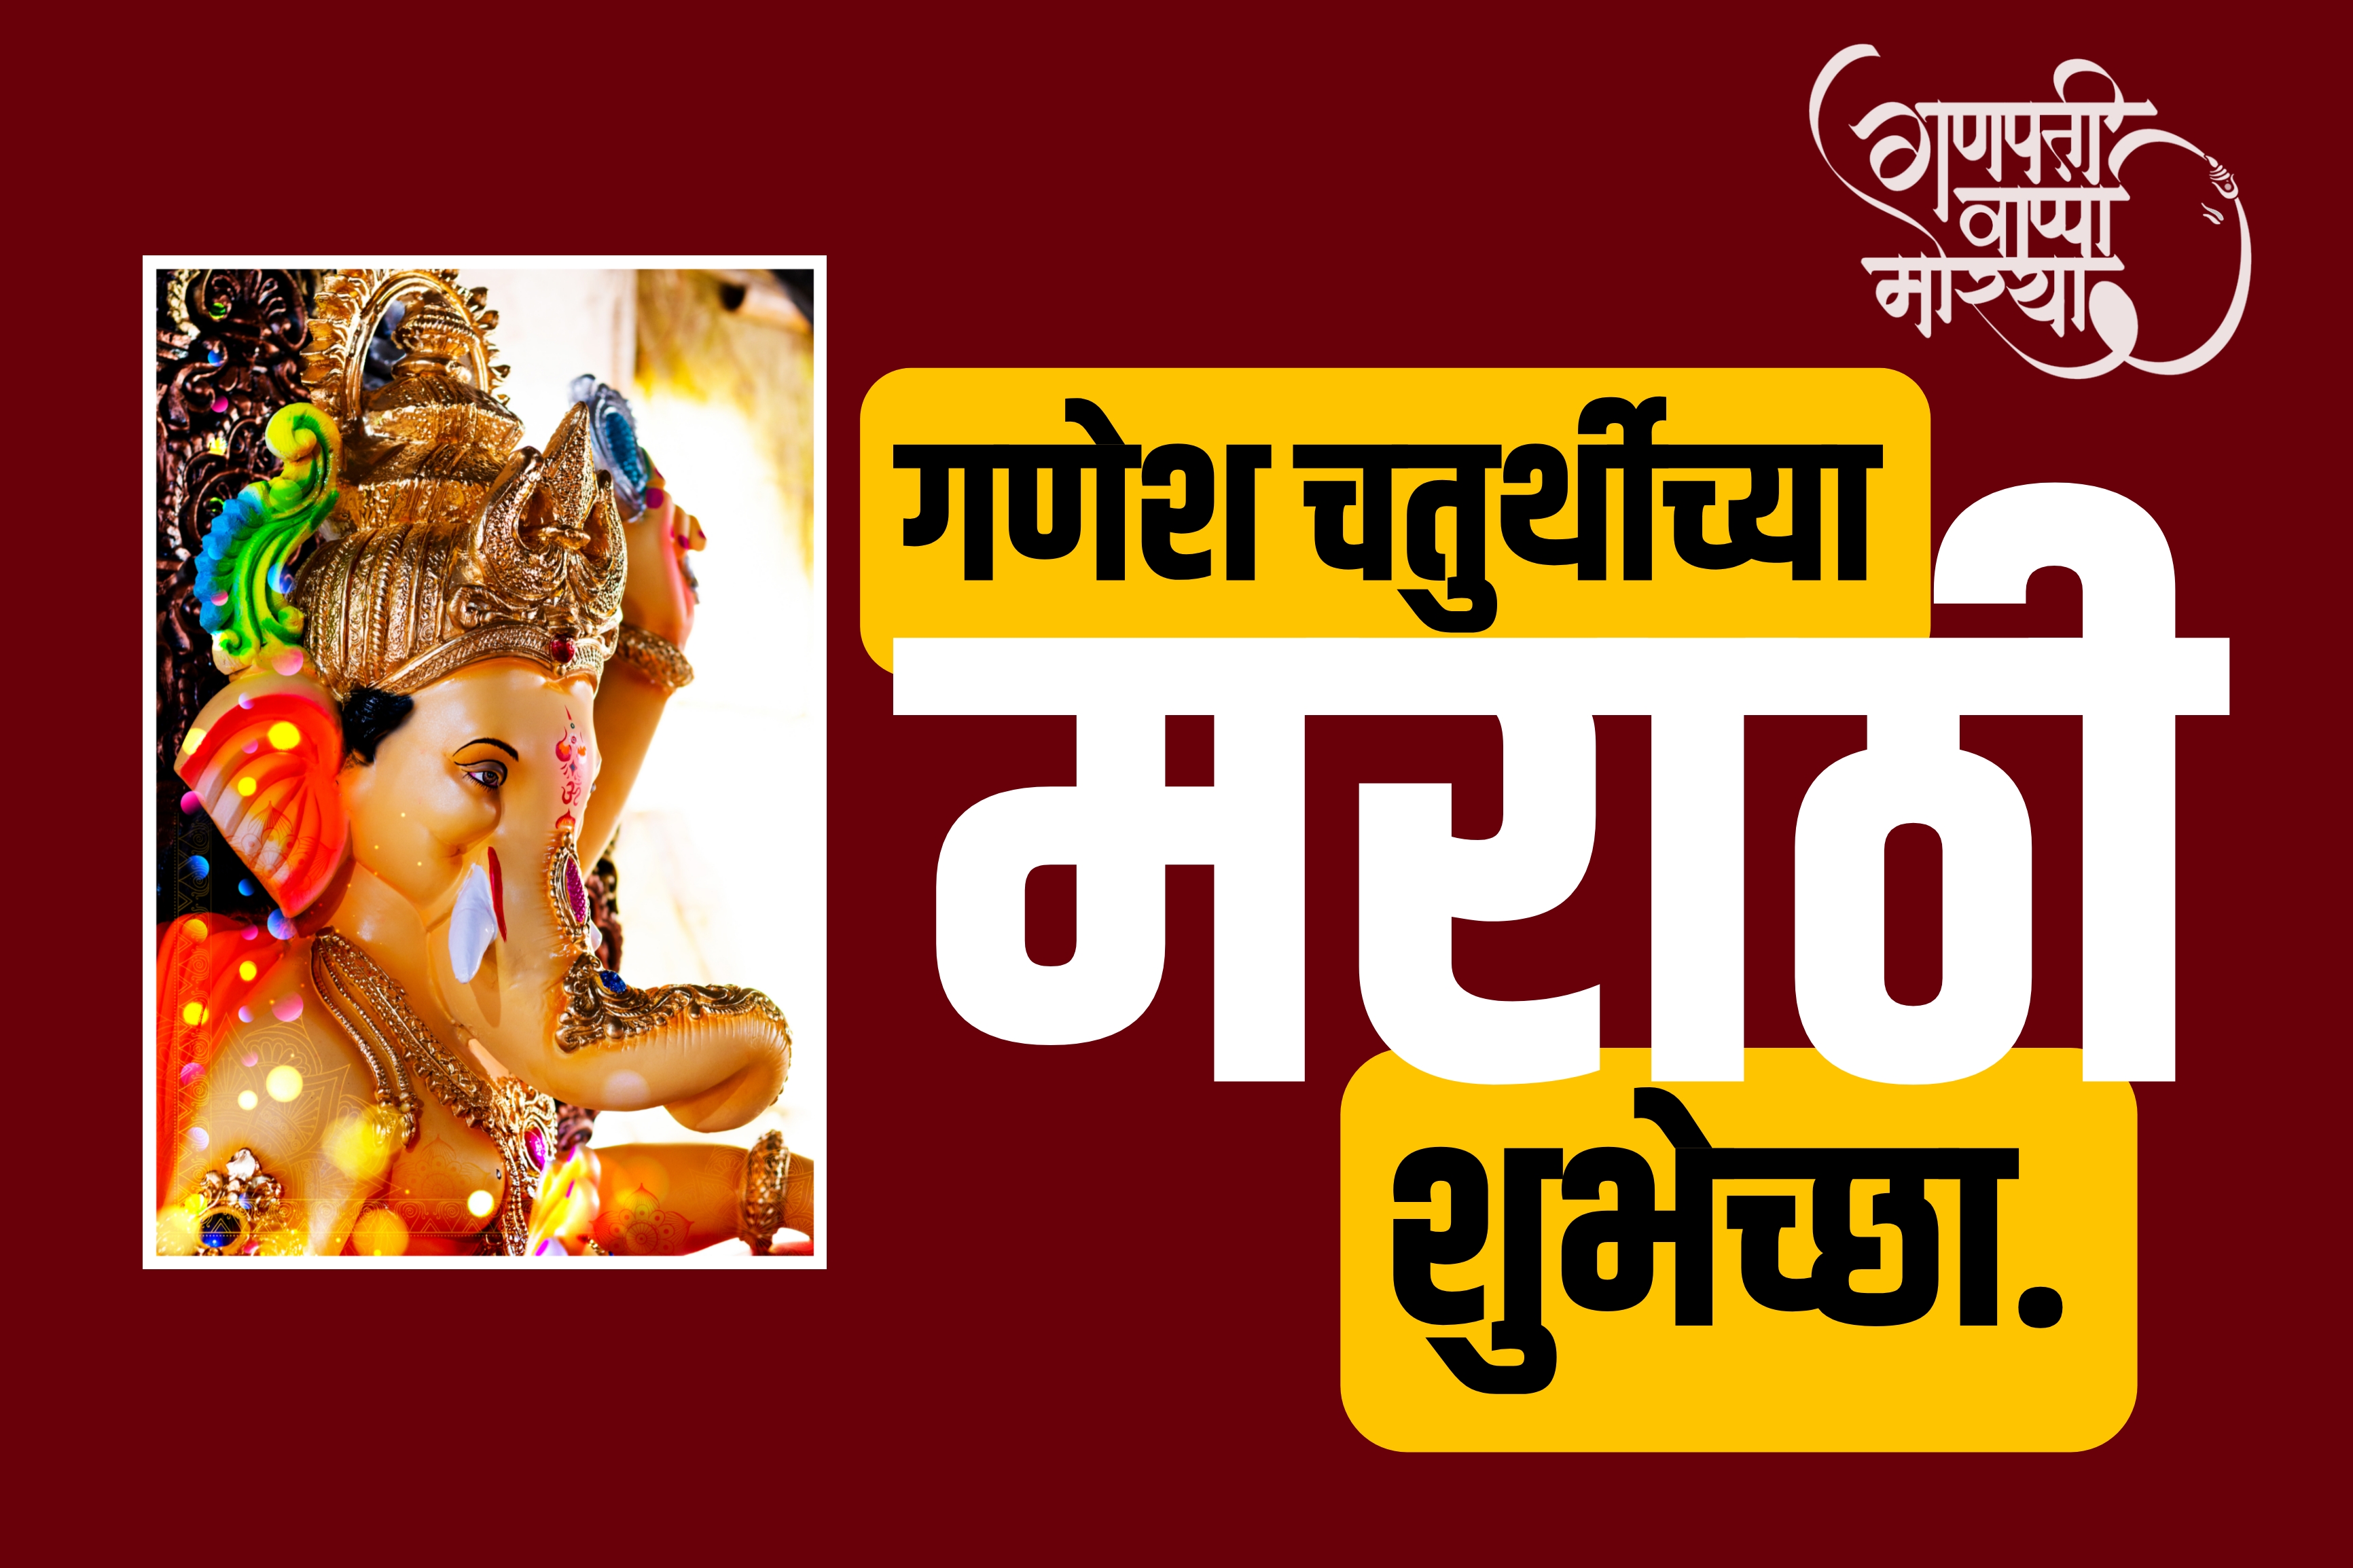 ganesh chaturthi marathi wishes images